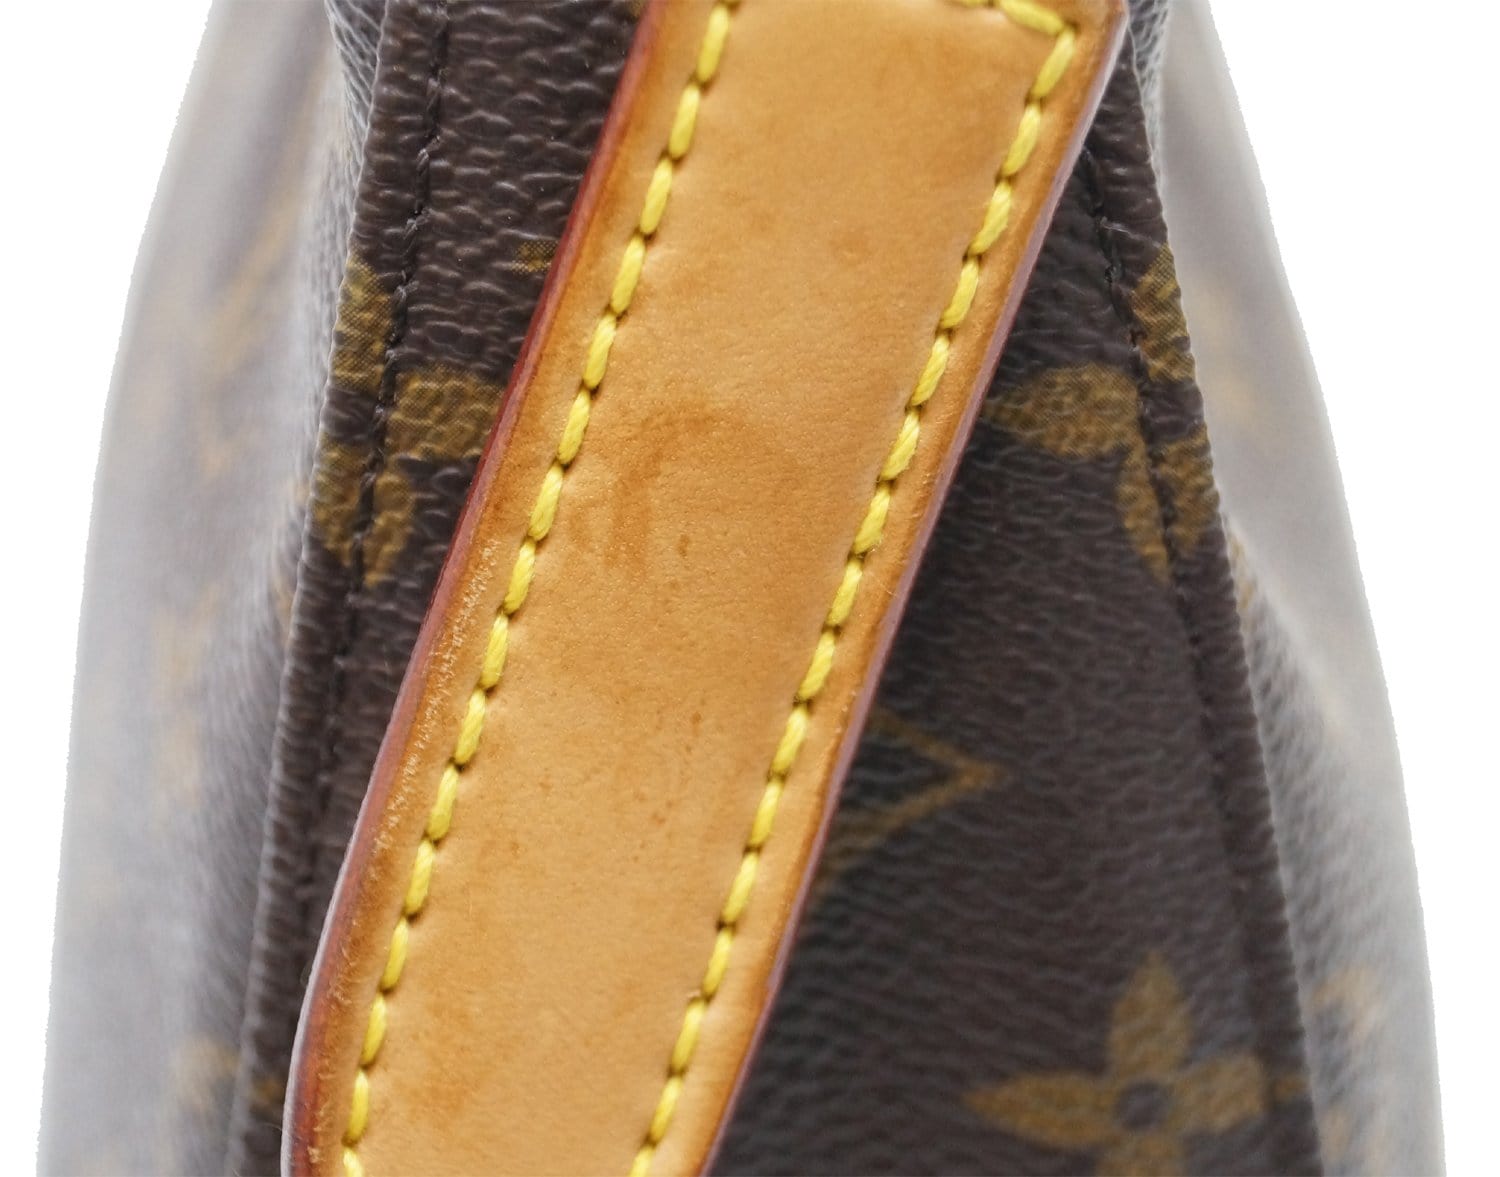 Louis Vuitton 2002 Pre-owned Monogram Looping mm Handbag - Brown